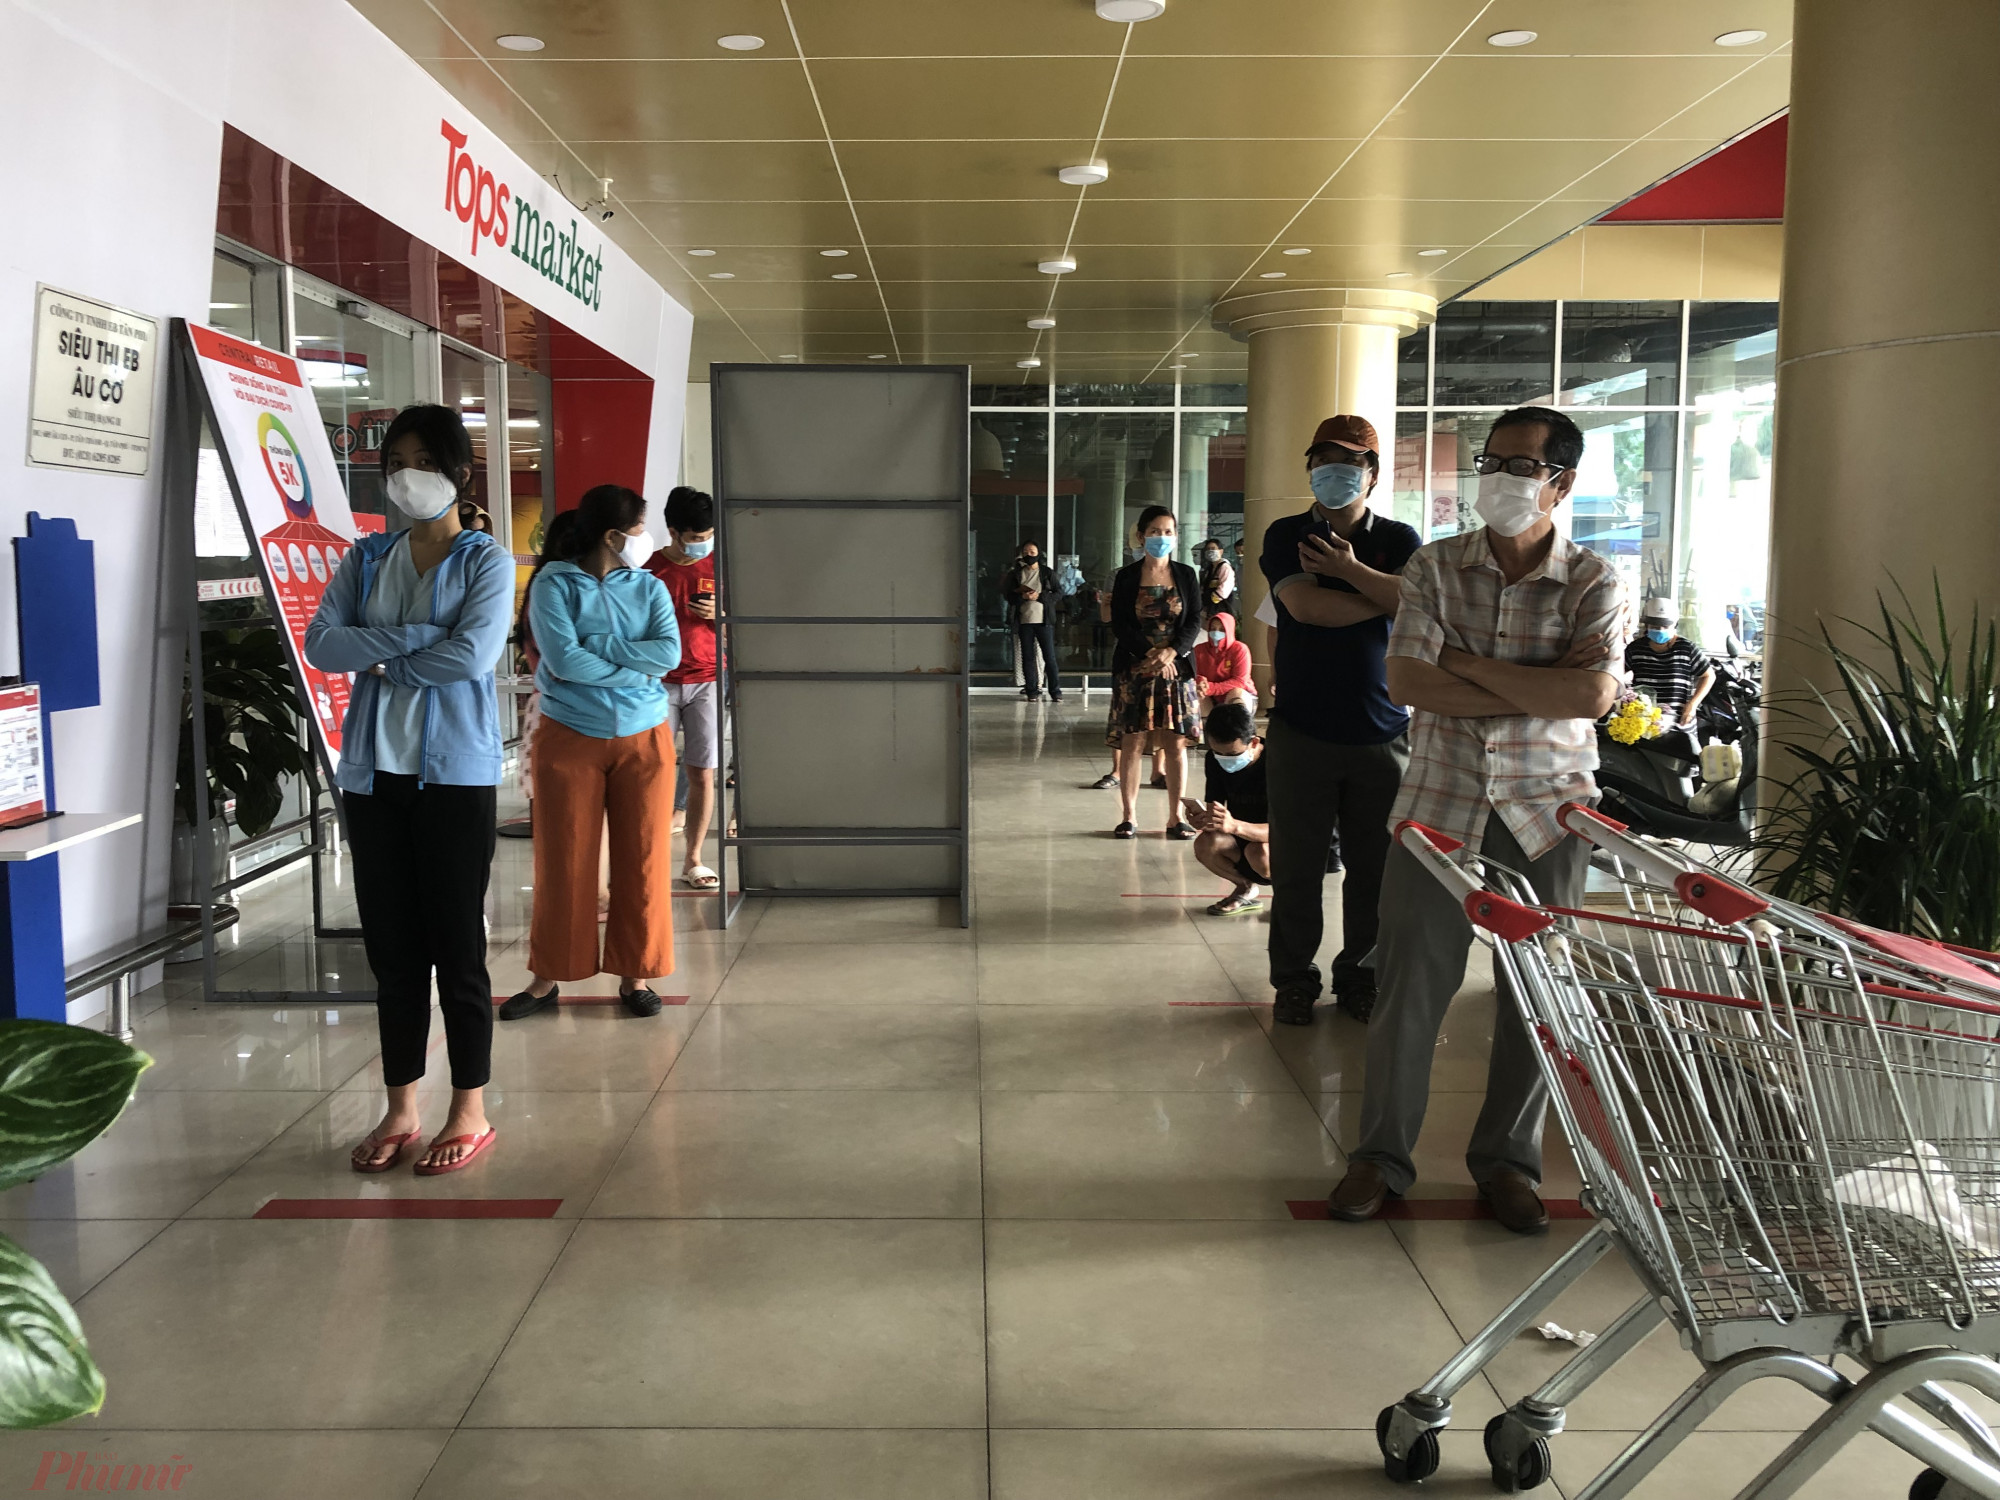 Tại siêu thị Topsmarket đường Âu Cơ (Q.Tân Phú), khách cũng xếp hàng rất đông, mỗi lượt chỉ được vào 2 người, khuôn viên cả siêu thị là 20 khách hàng.